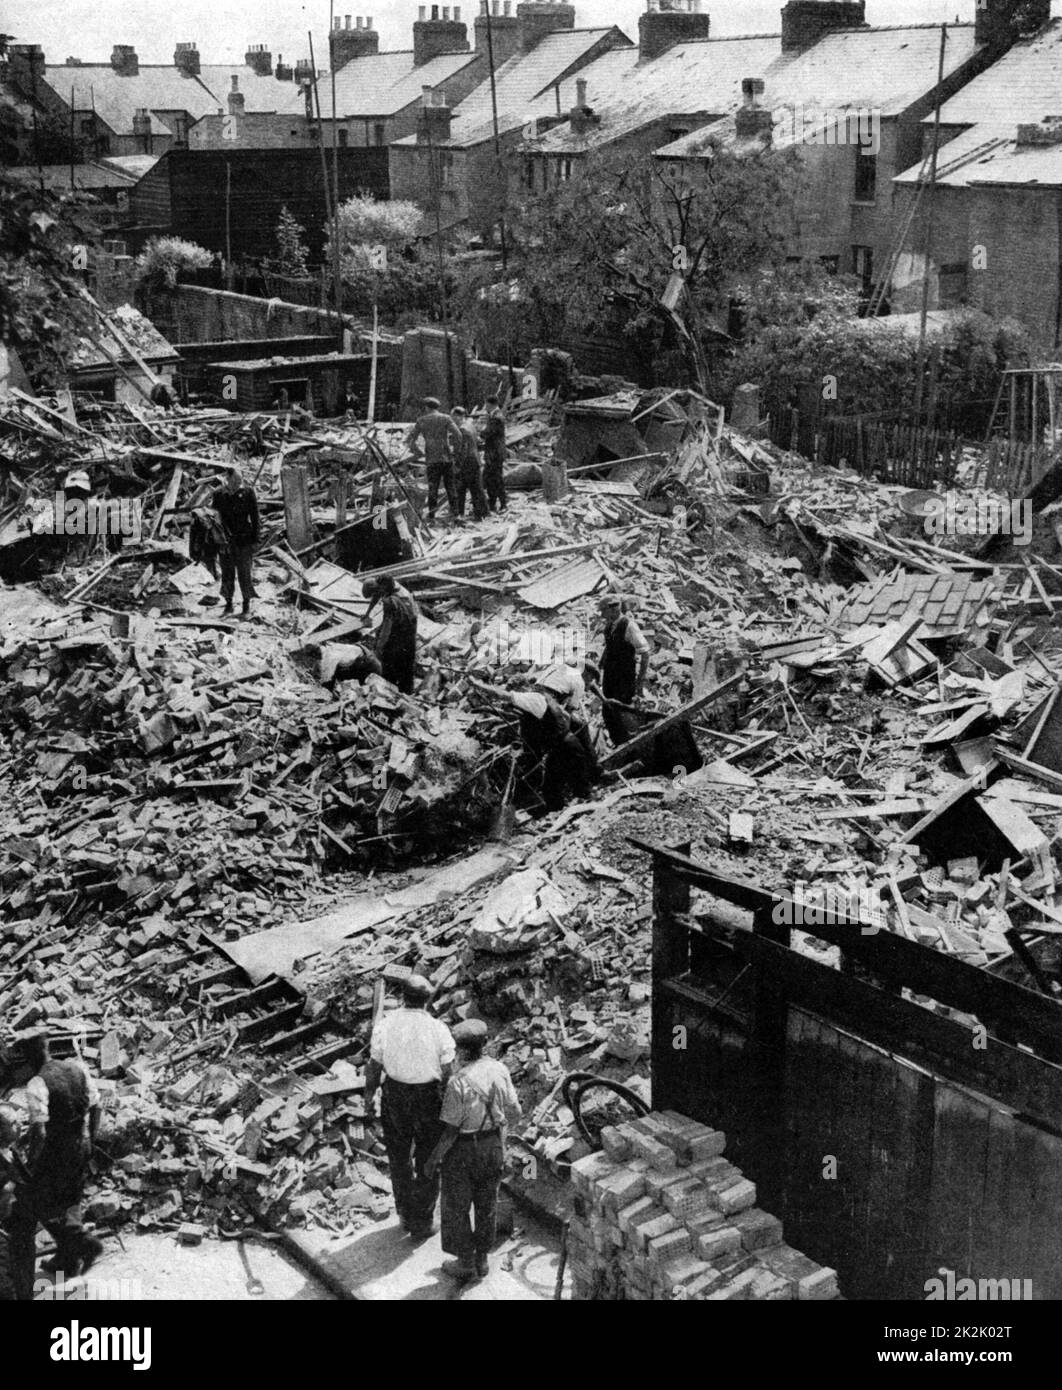 Dommages à la bombe dans une rue de Cambridge après un raid sur l'Est de l'Angleterre par la Luftwaffe (Armée de l'air allemande) dans la nuit du 18 au 19 juin 1940. Un certain nombre de maisons détruites, 11 civils tués et 14 blessés. Banque D'Images